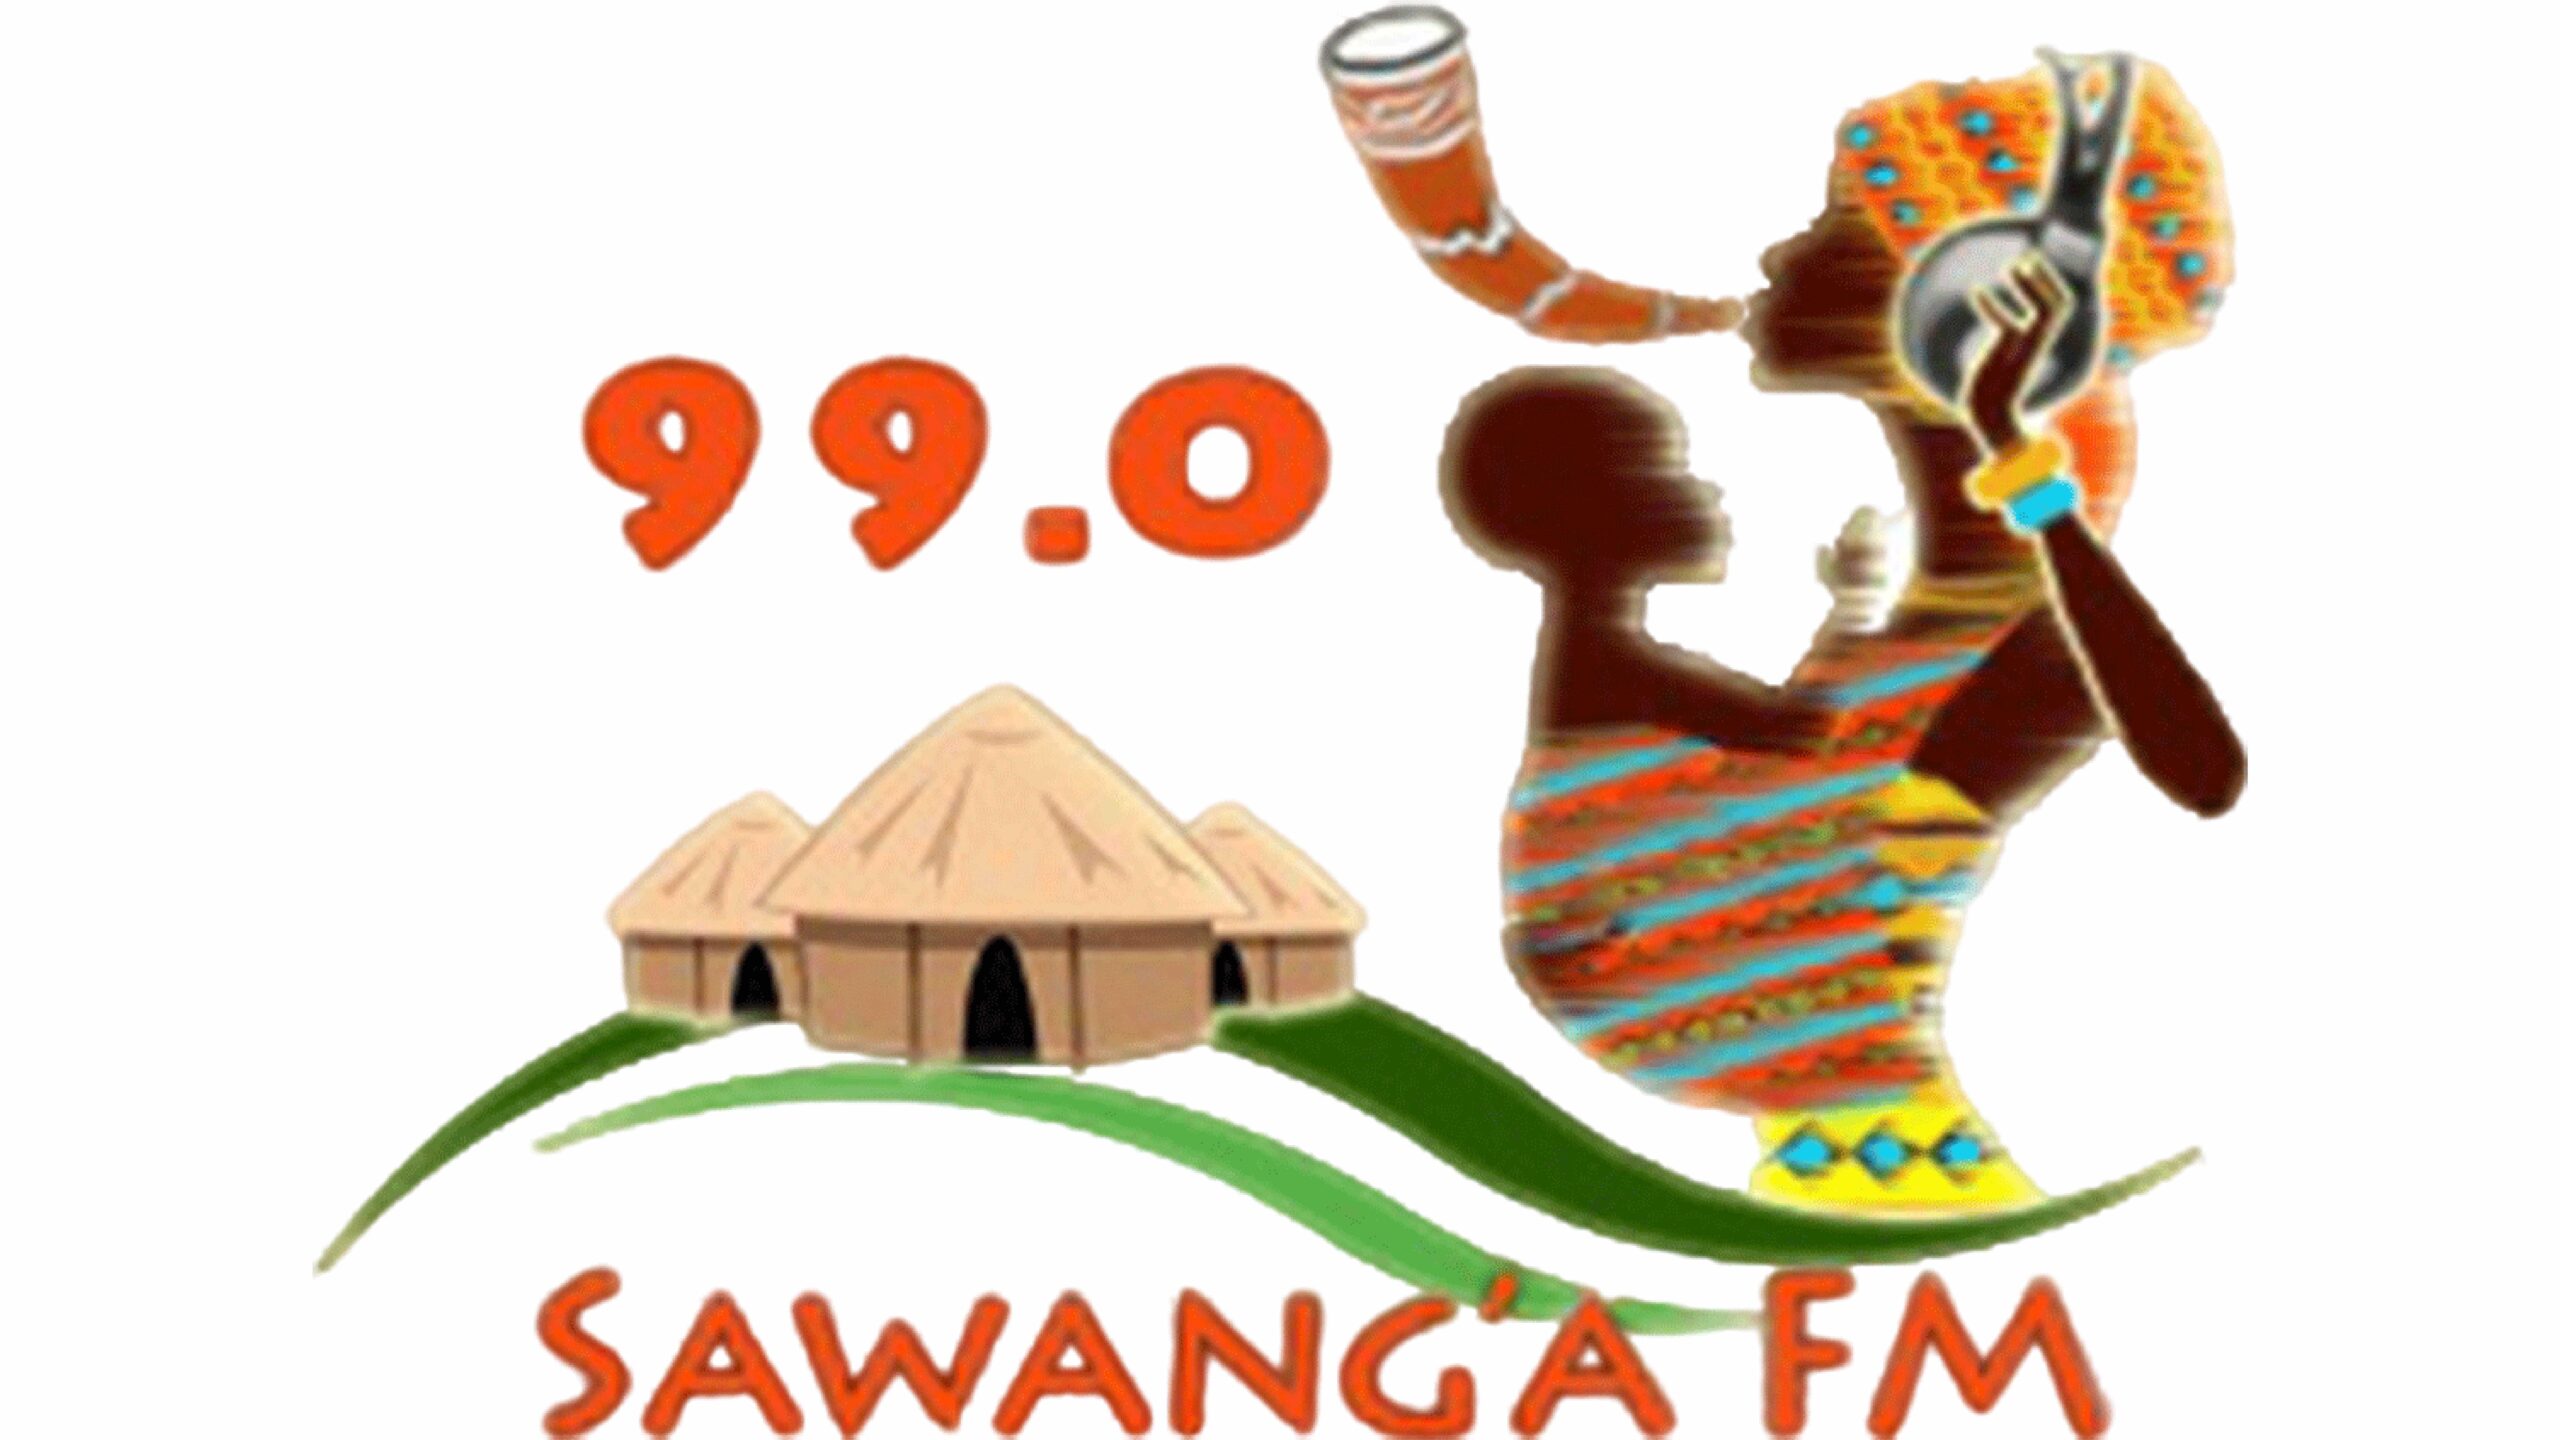 sawanga logo36 scaled